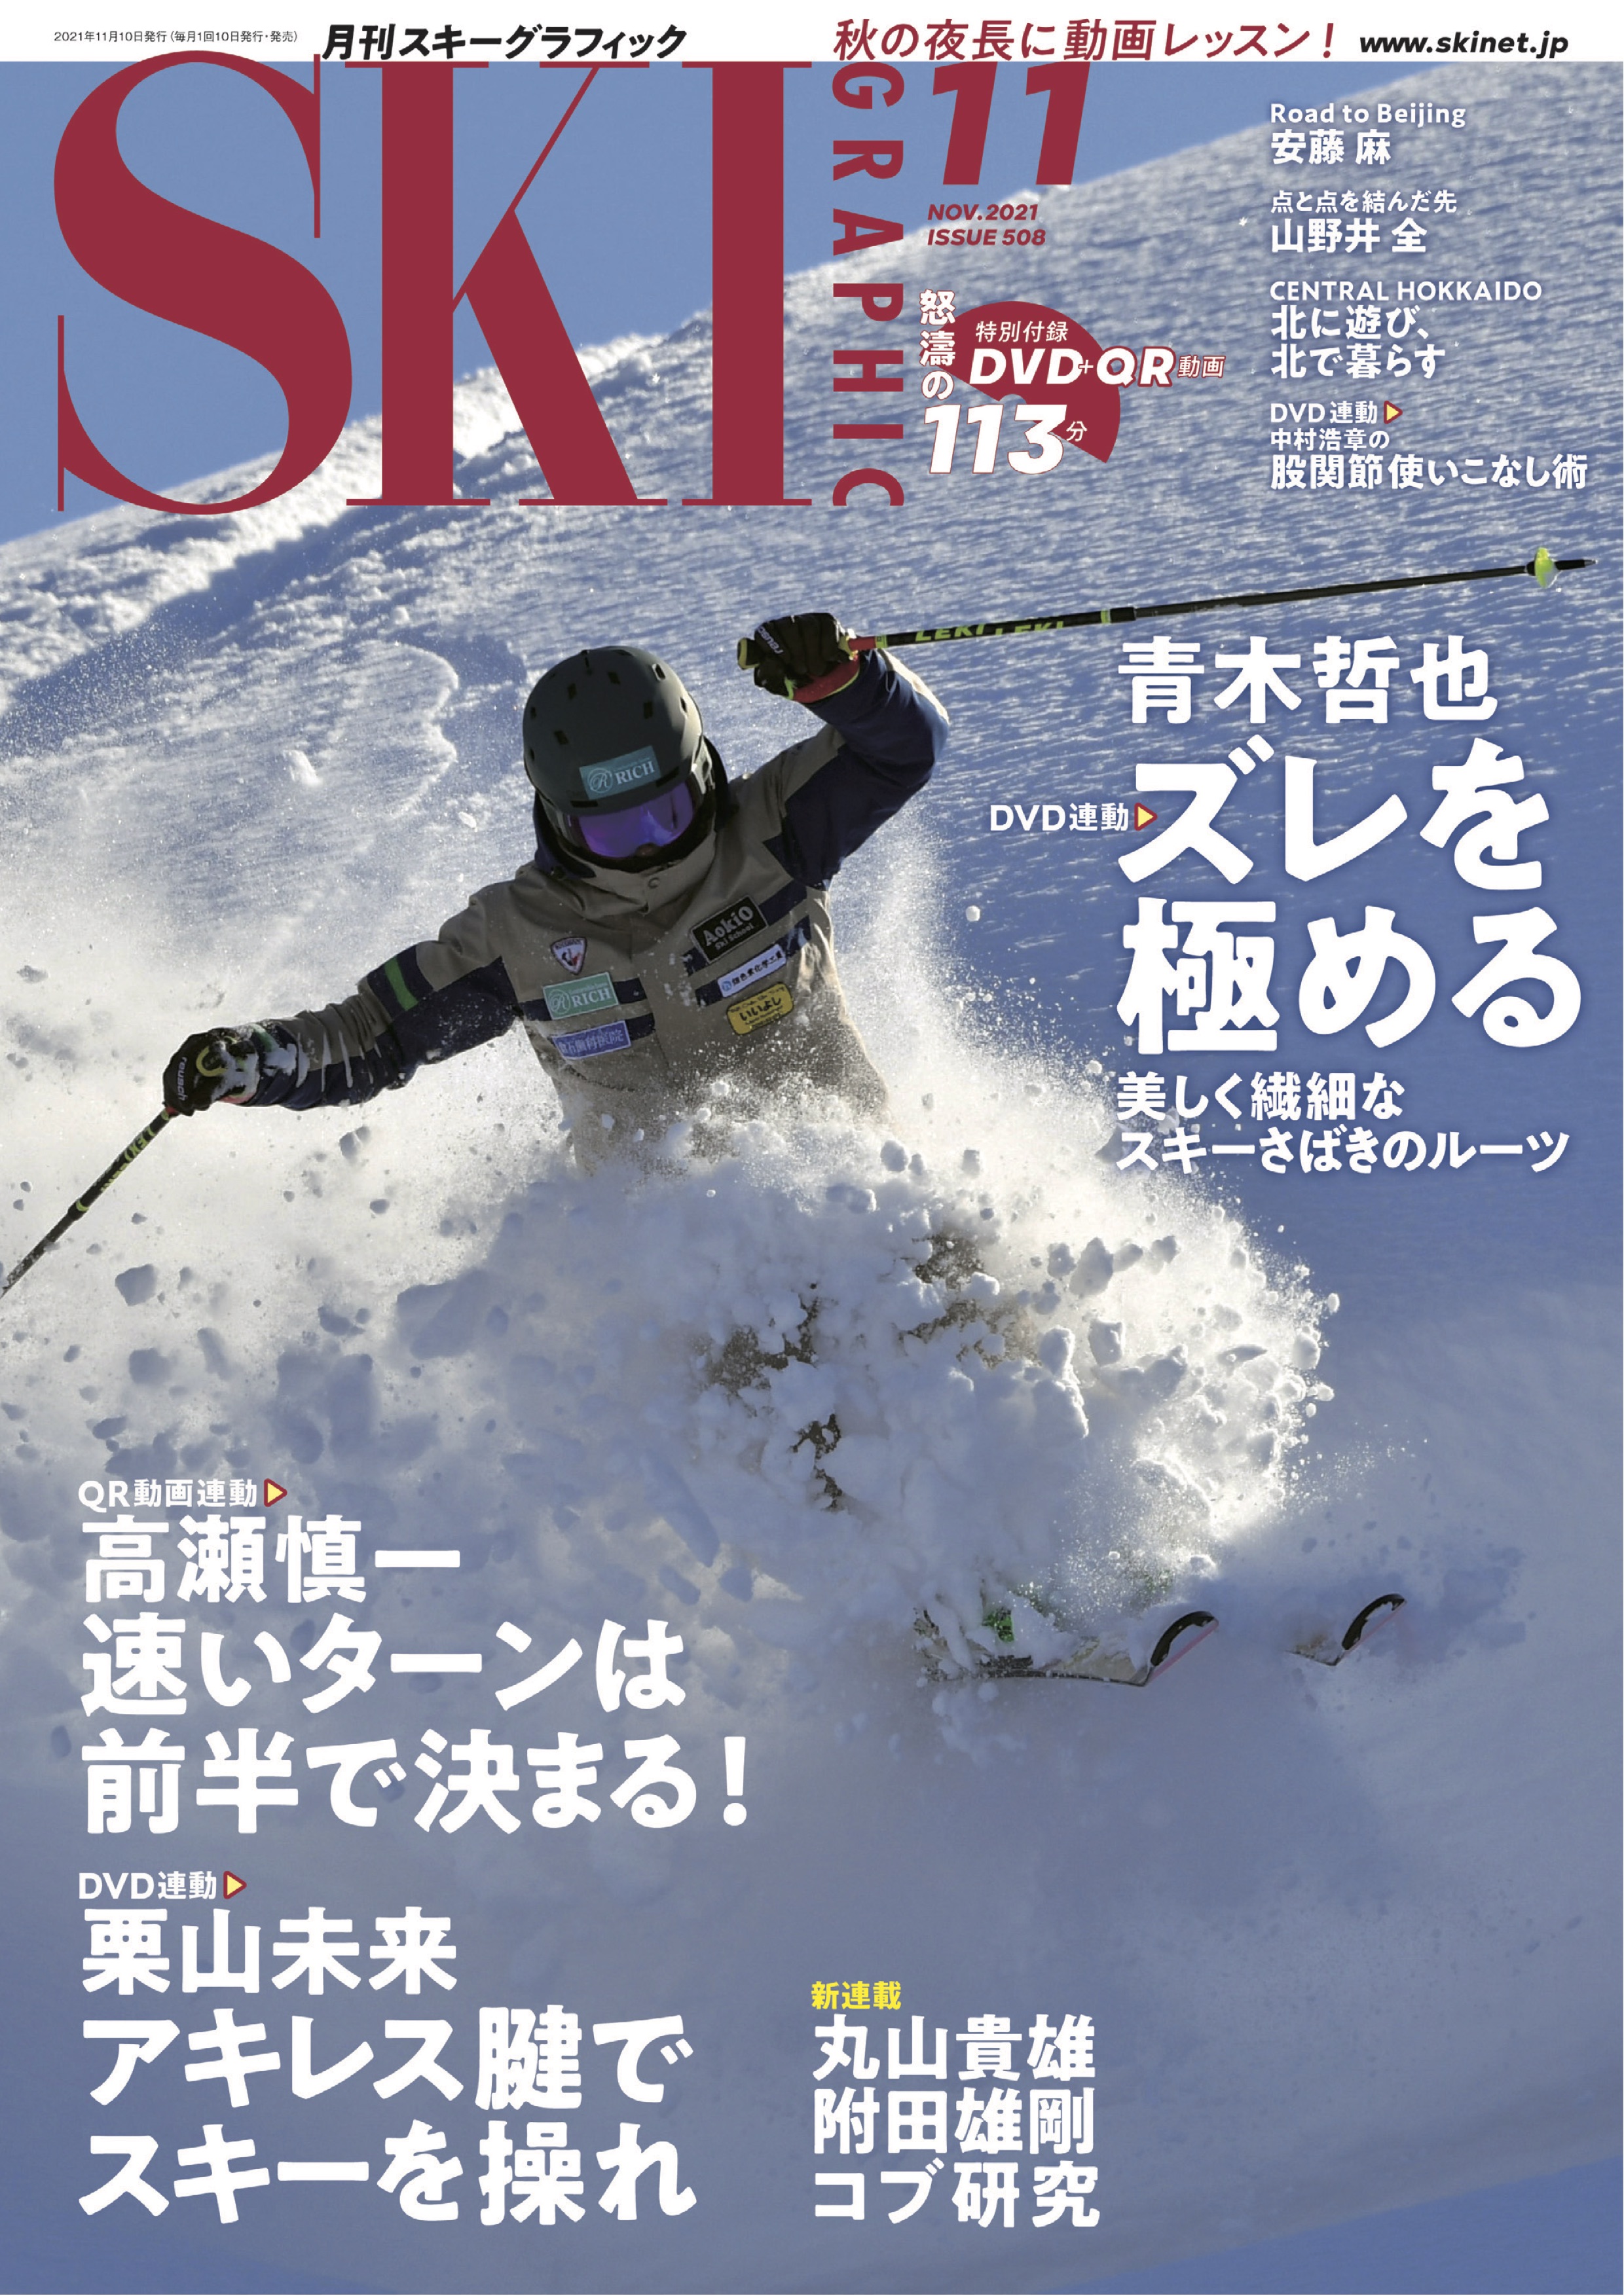 スキーグラフィックNo.508 - スキーグラフィック編集部 - 漫画・ラノベ